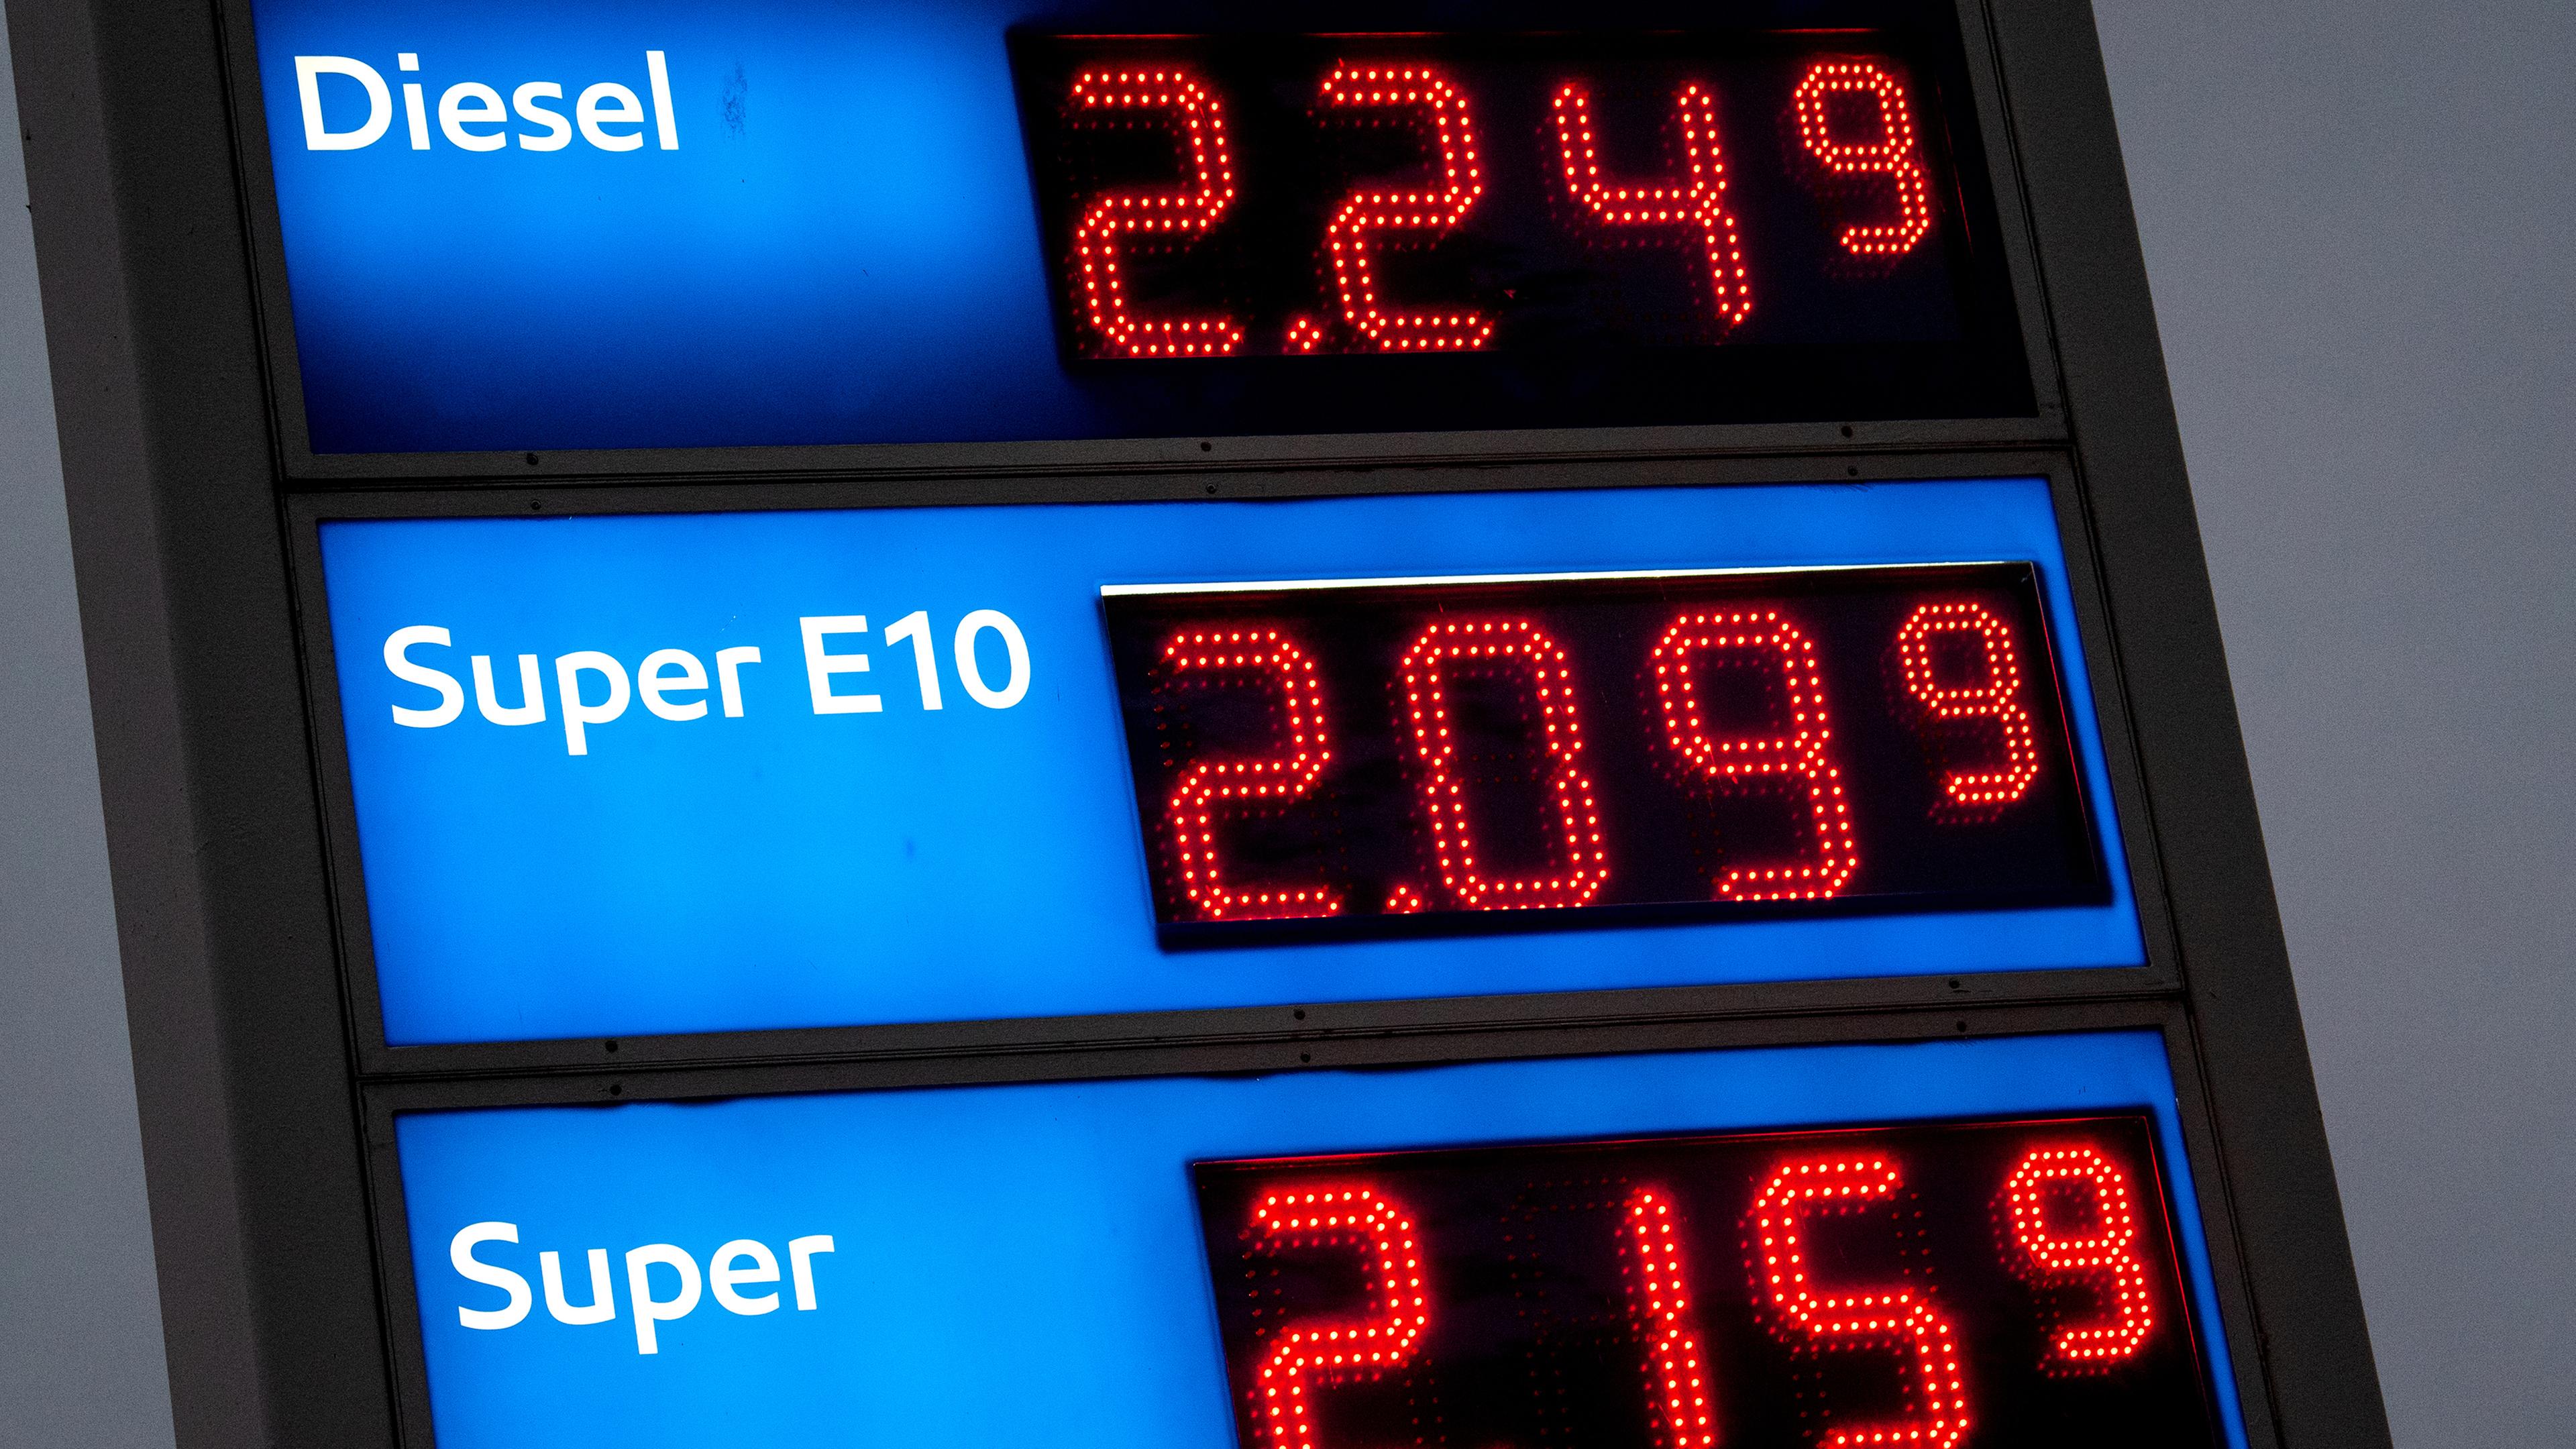 Die Preistafel einer Tankstelle, Diesel ist die teuerste Kraftstoffsorte.